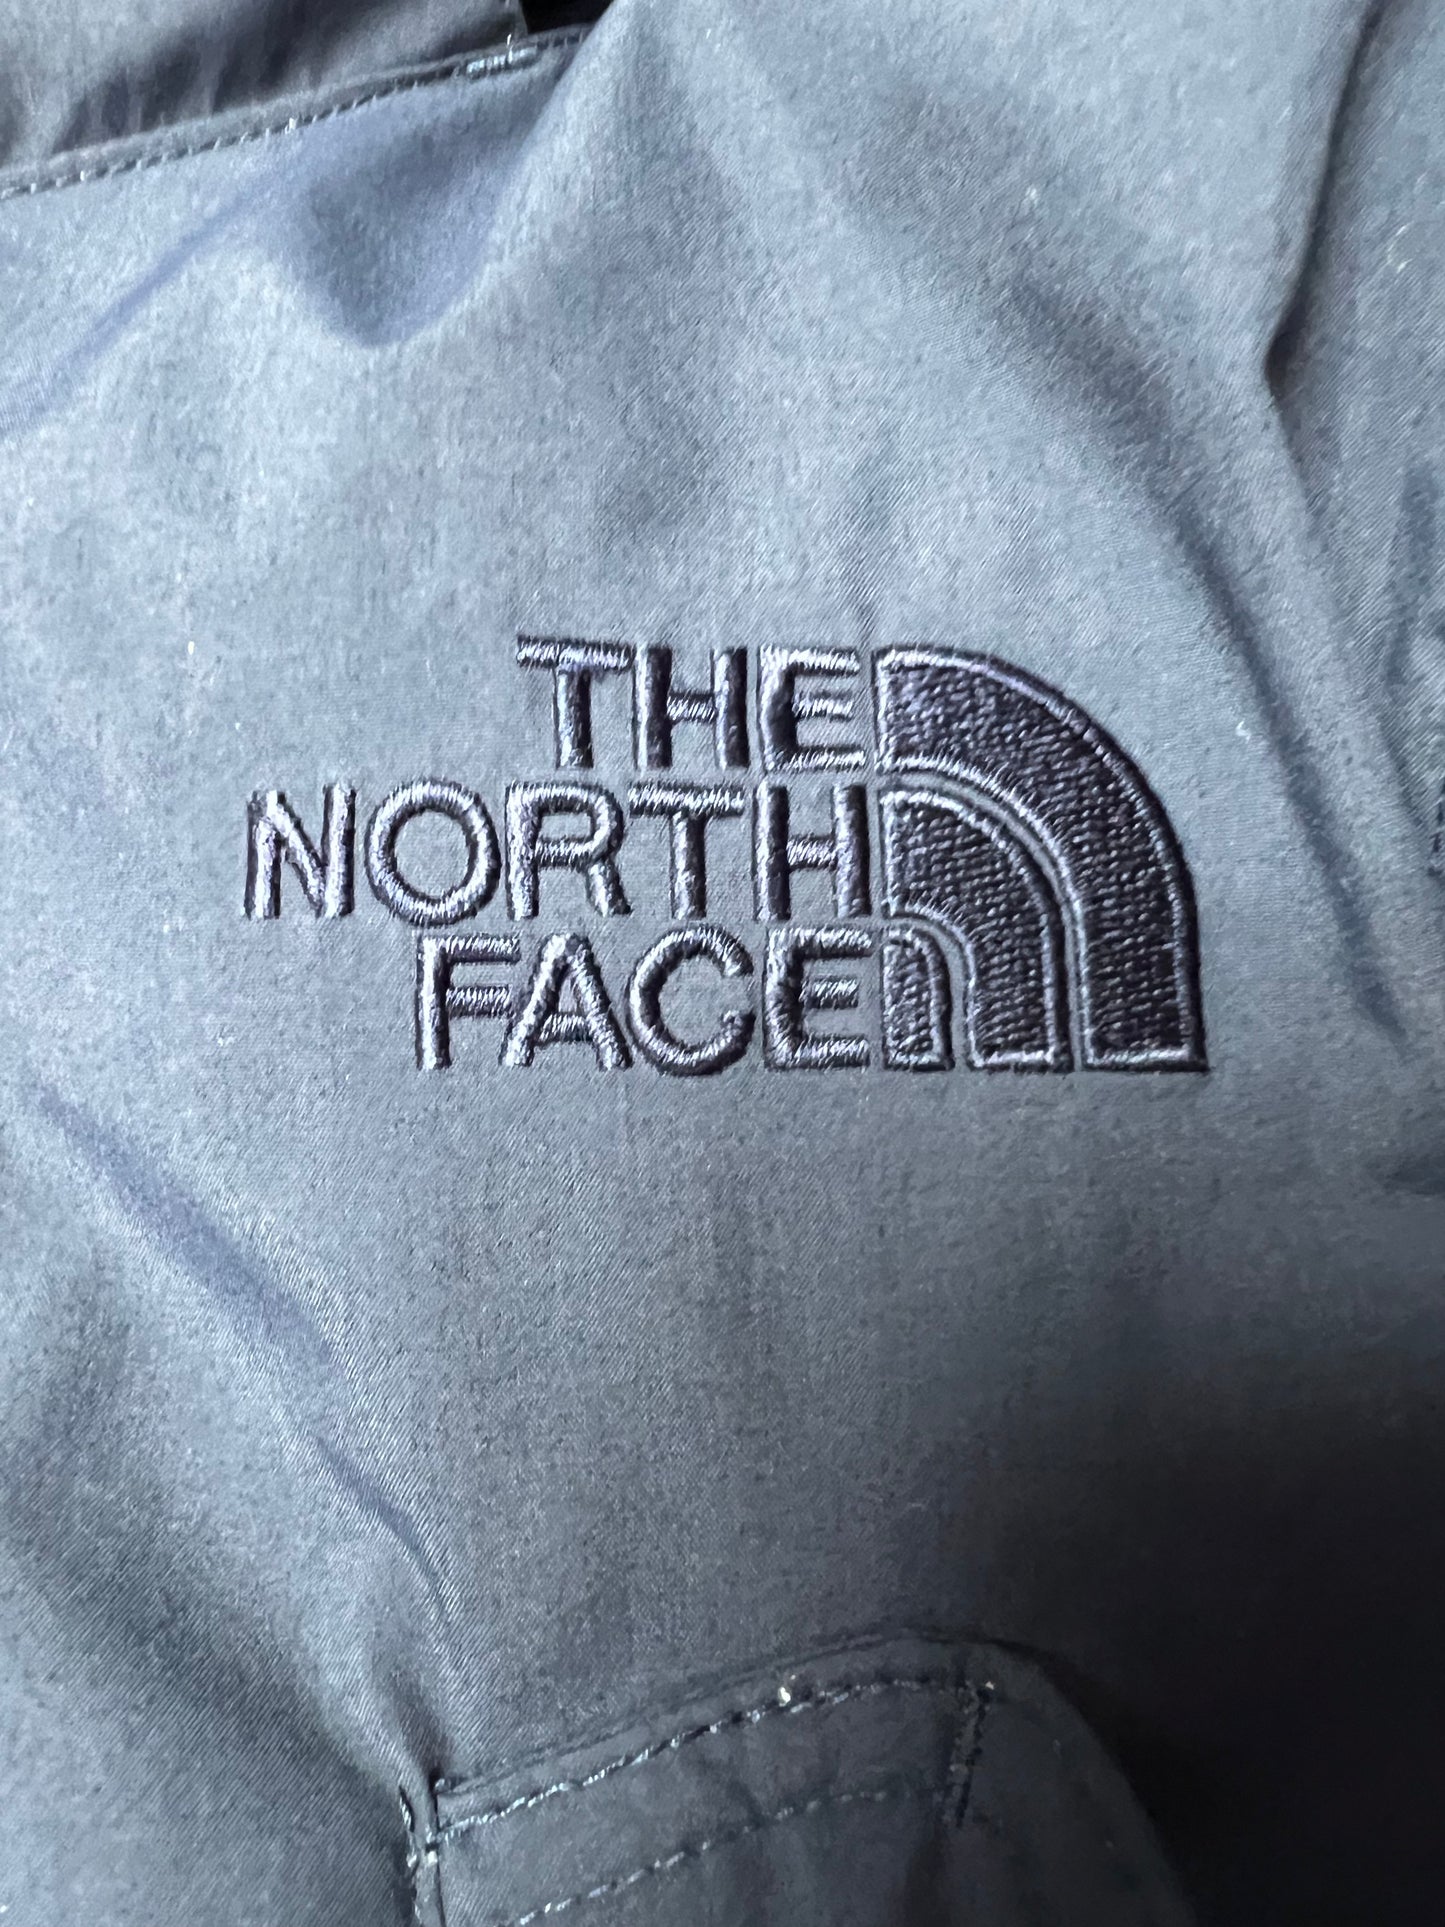 10056【THE NORTH FACE】ザノースフェイス メンズ マクマード HYVENT ハイベント ダウンジャケット ネイビー 85